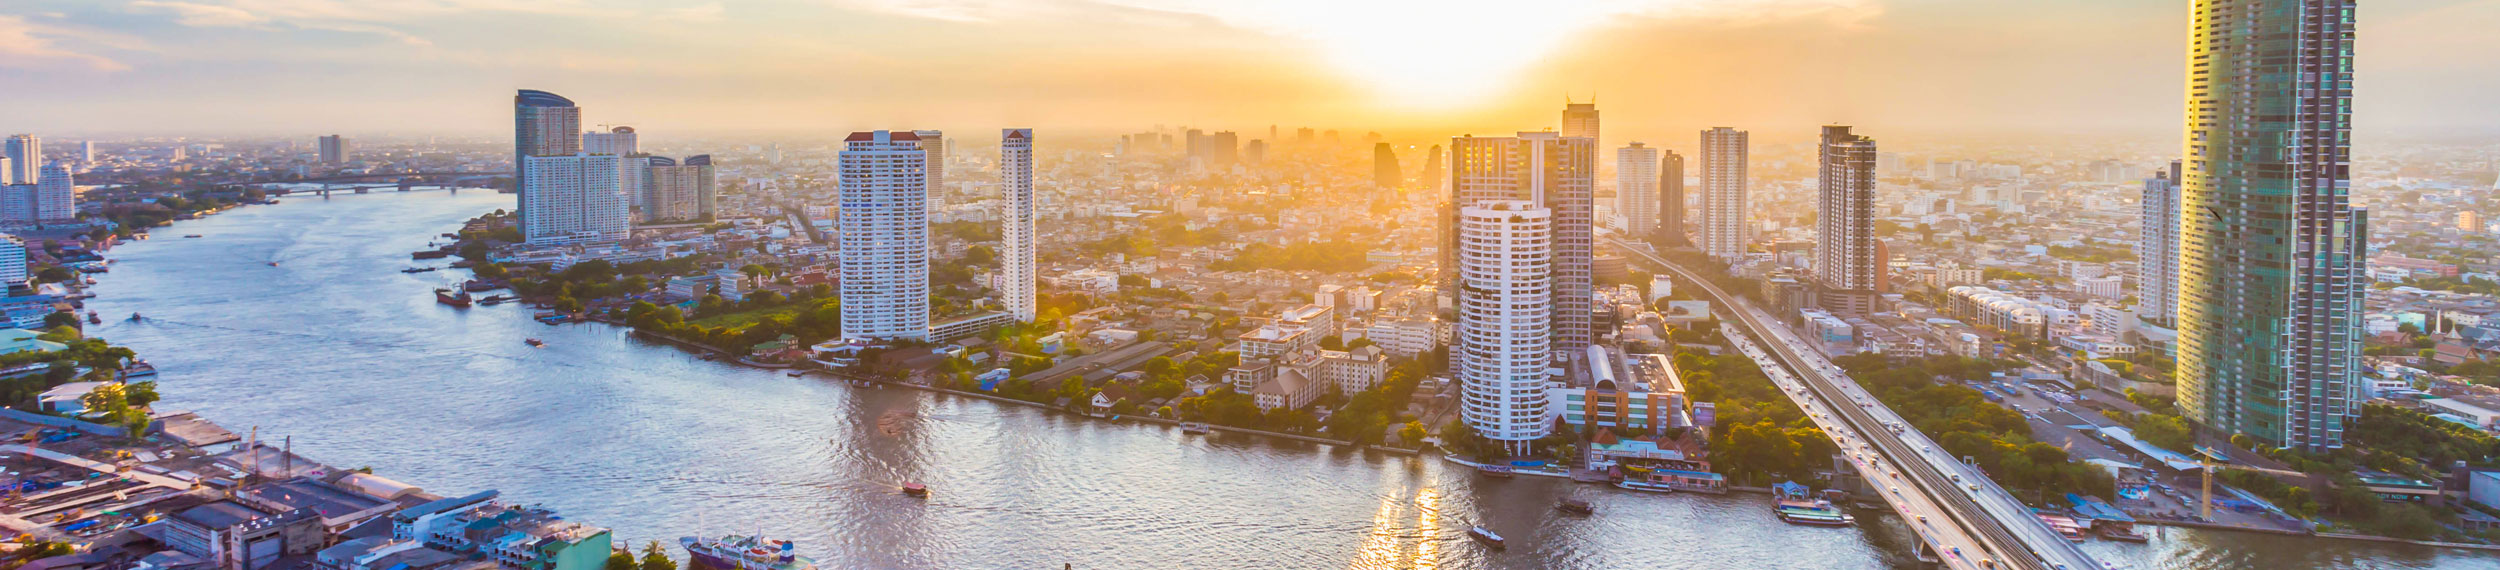 An aerial shot of Chao Phraya River and downtown Bangkok Thailand.